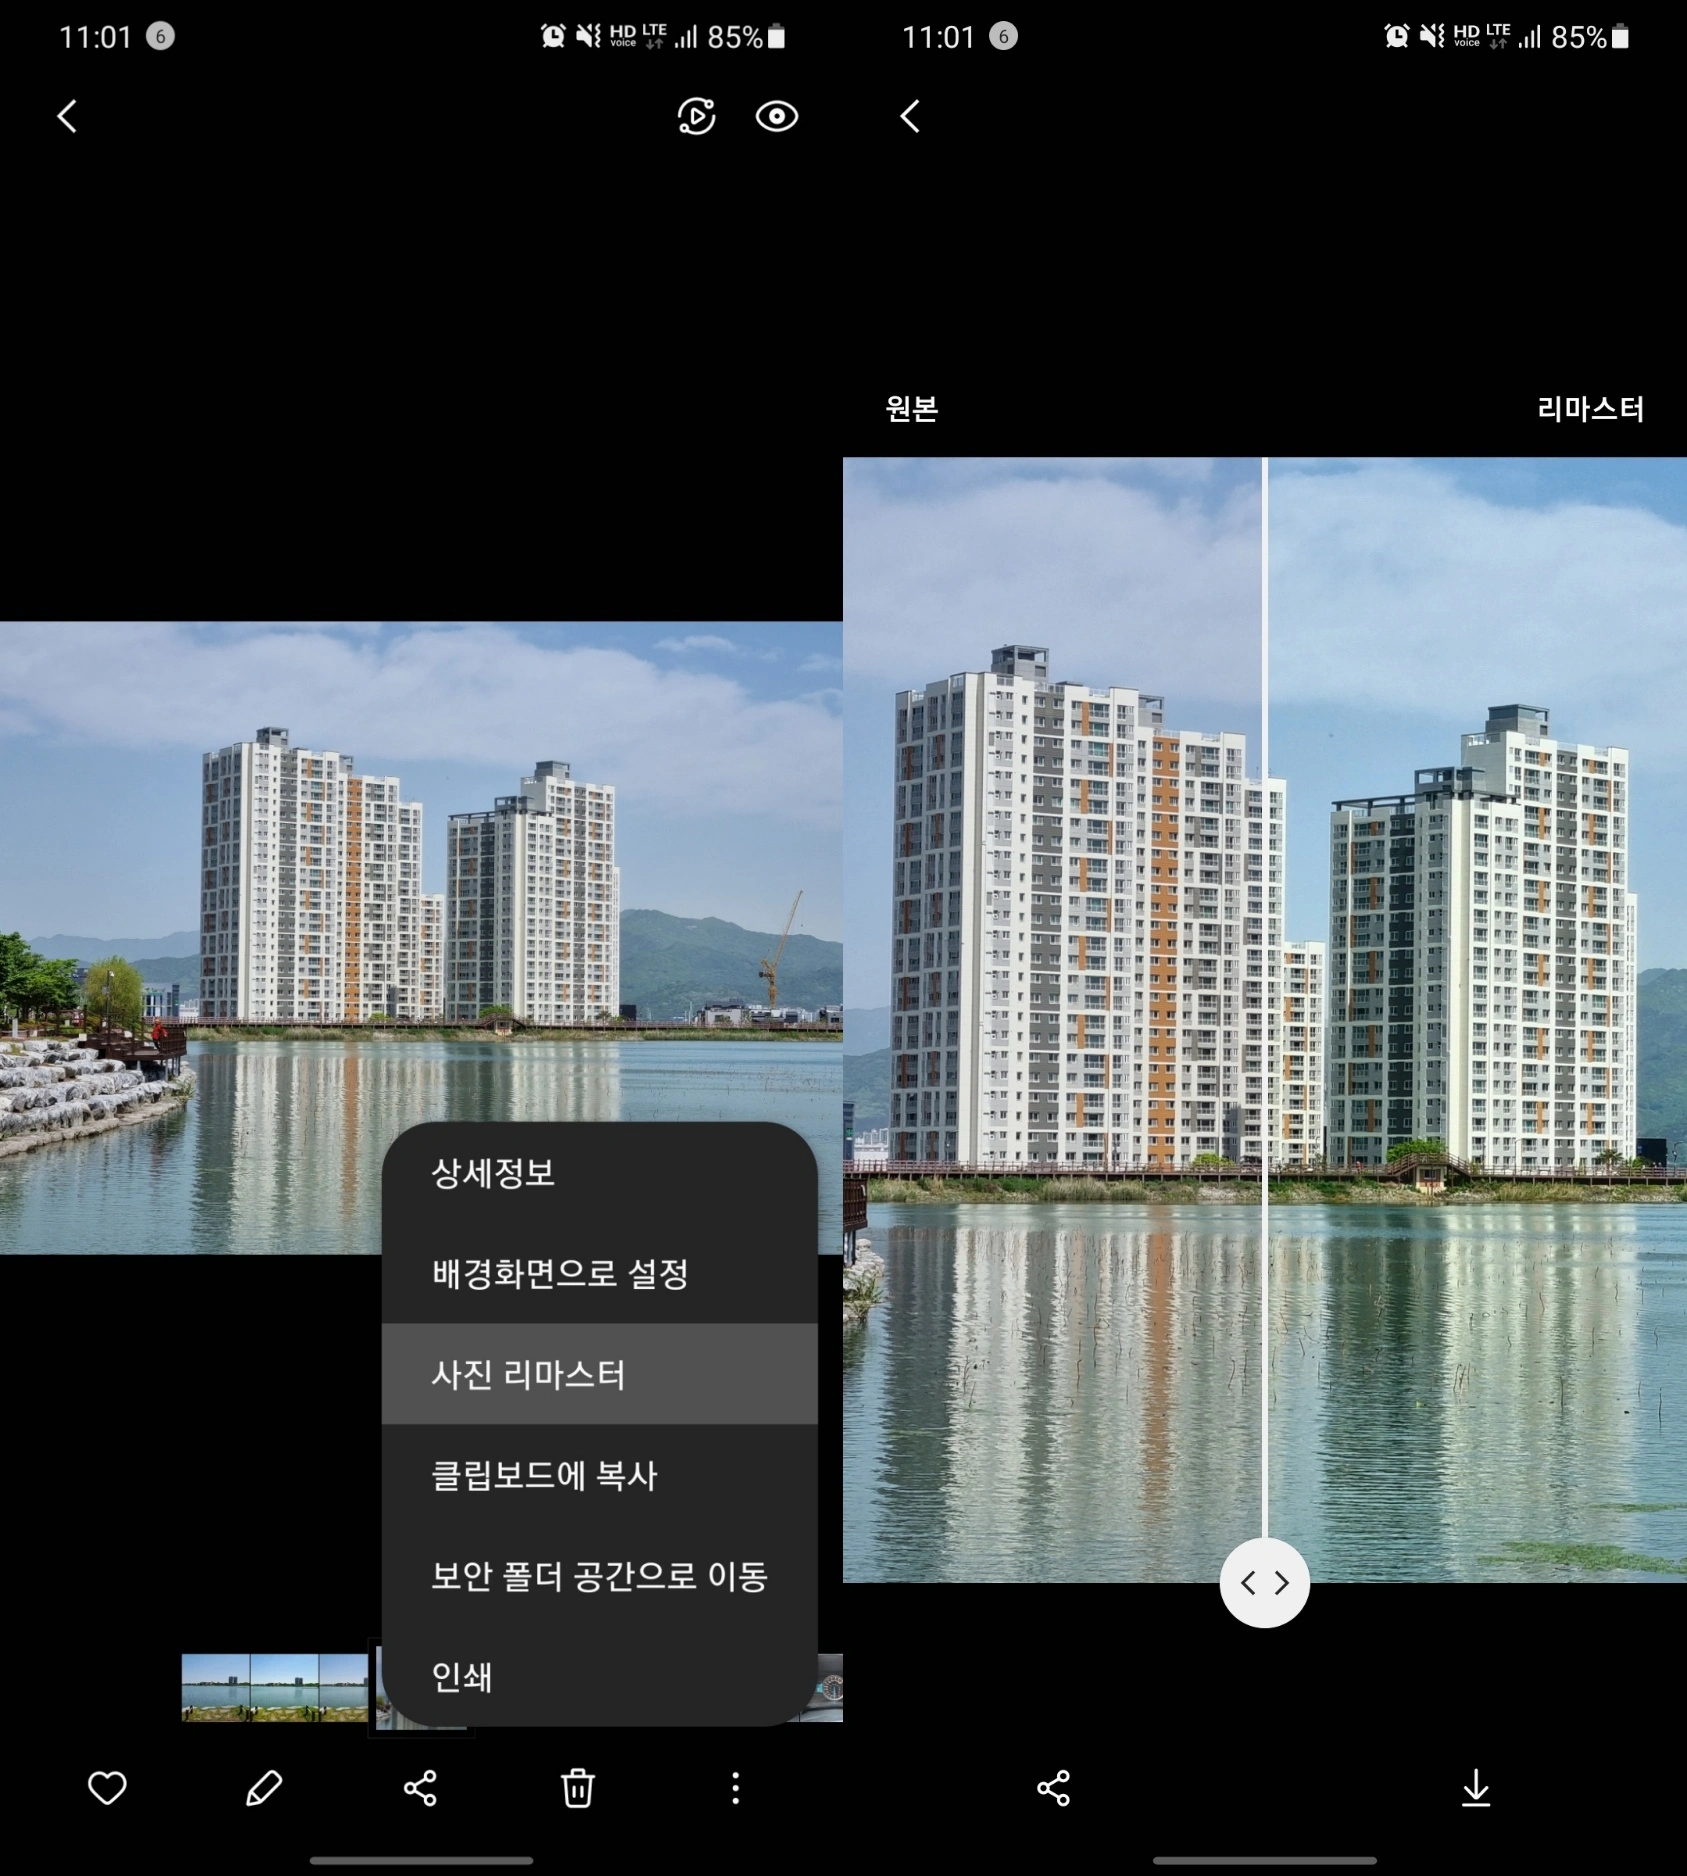 갤러리 앱에서 사진을 고르다 발견한 '사진 리마스터', 기존의 AI 포토 리마스터보다 쓰기 쉽다.